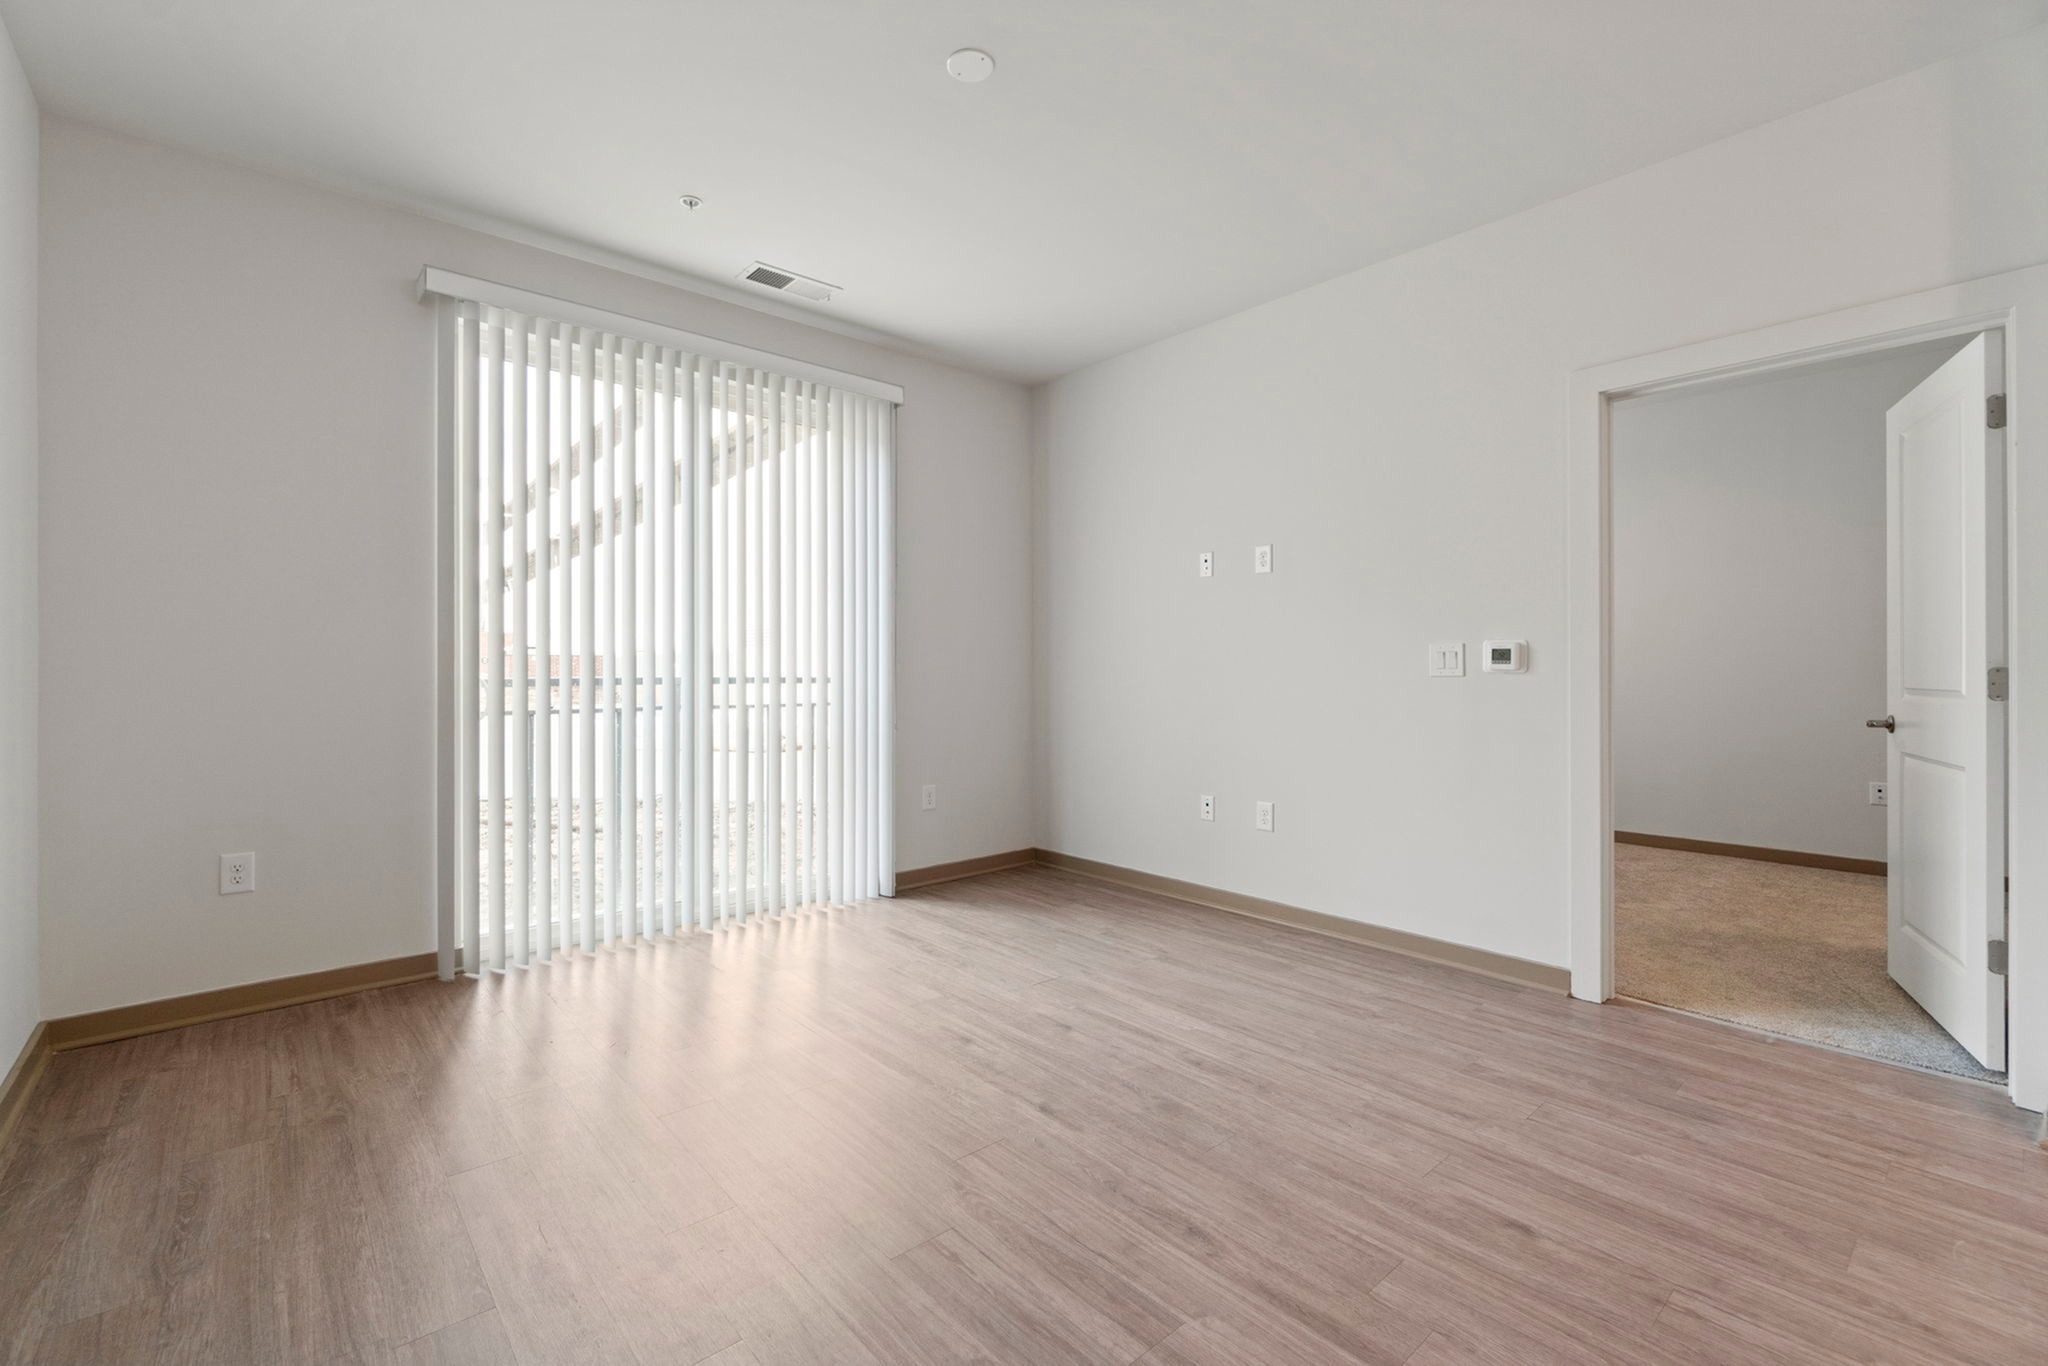 Livingroom with juliet balcony